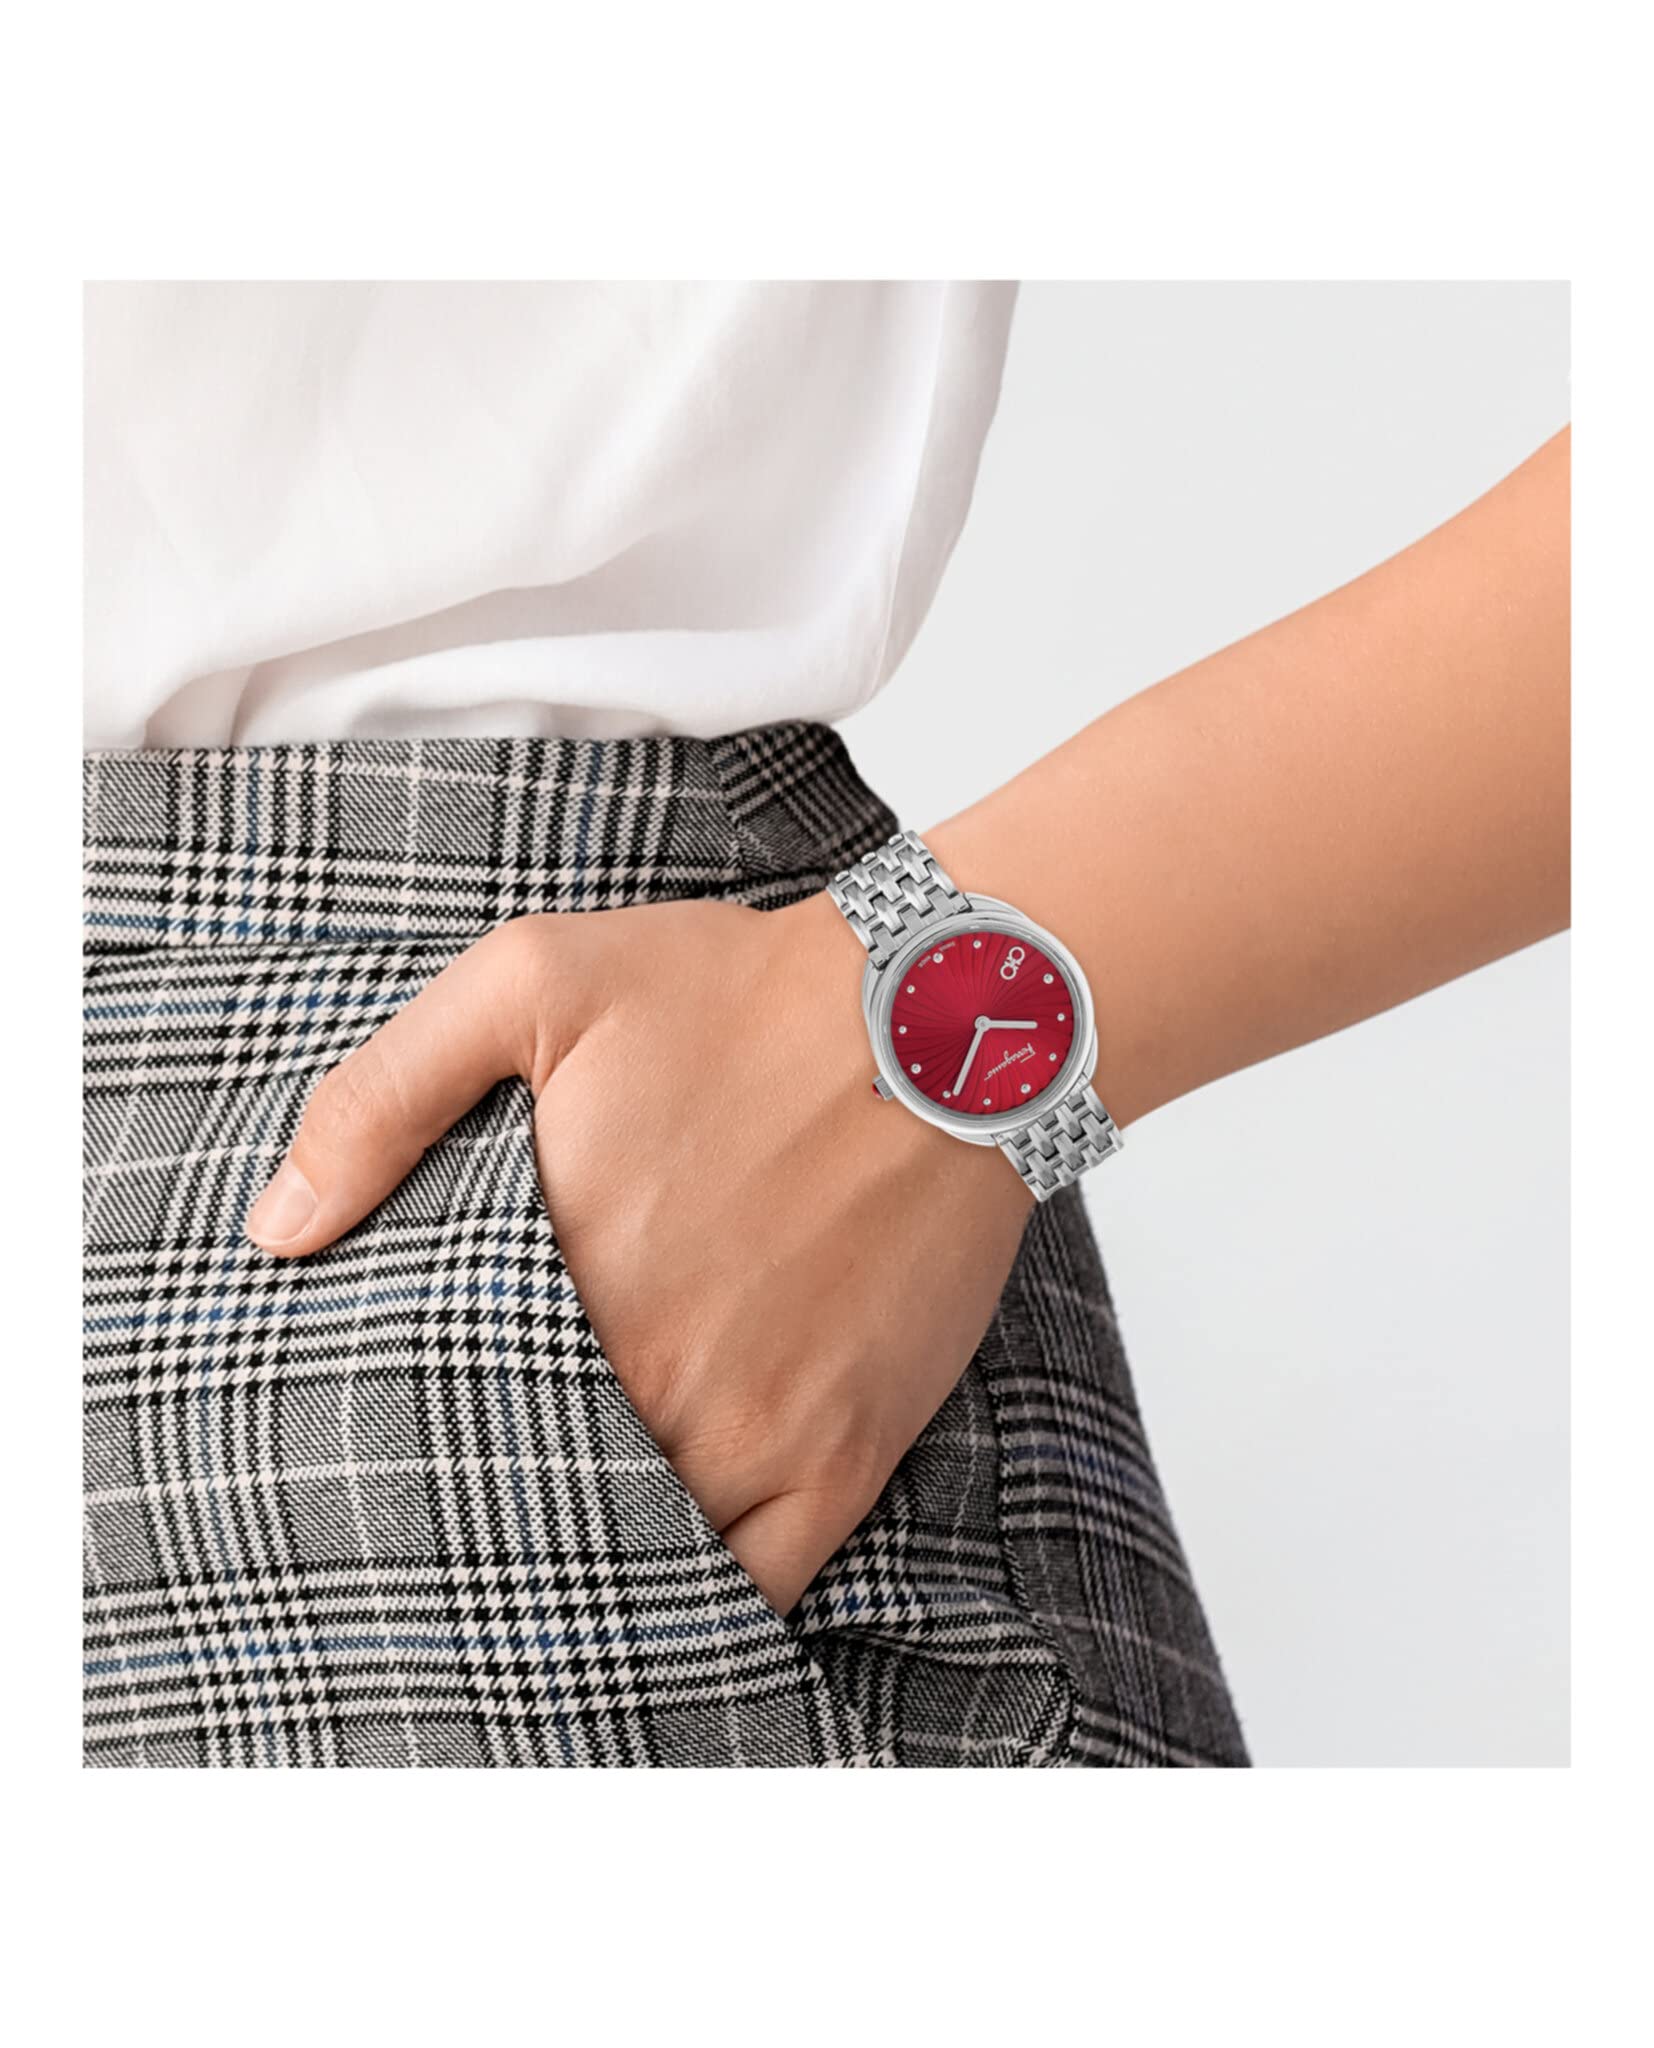 Salvatore Ferragamo Collection Luxury Womens Watch Timepiece